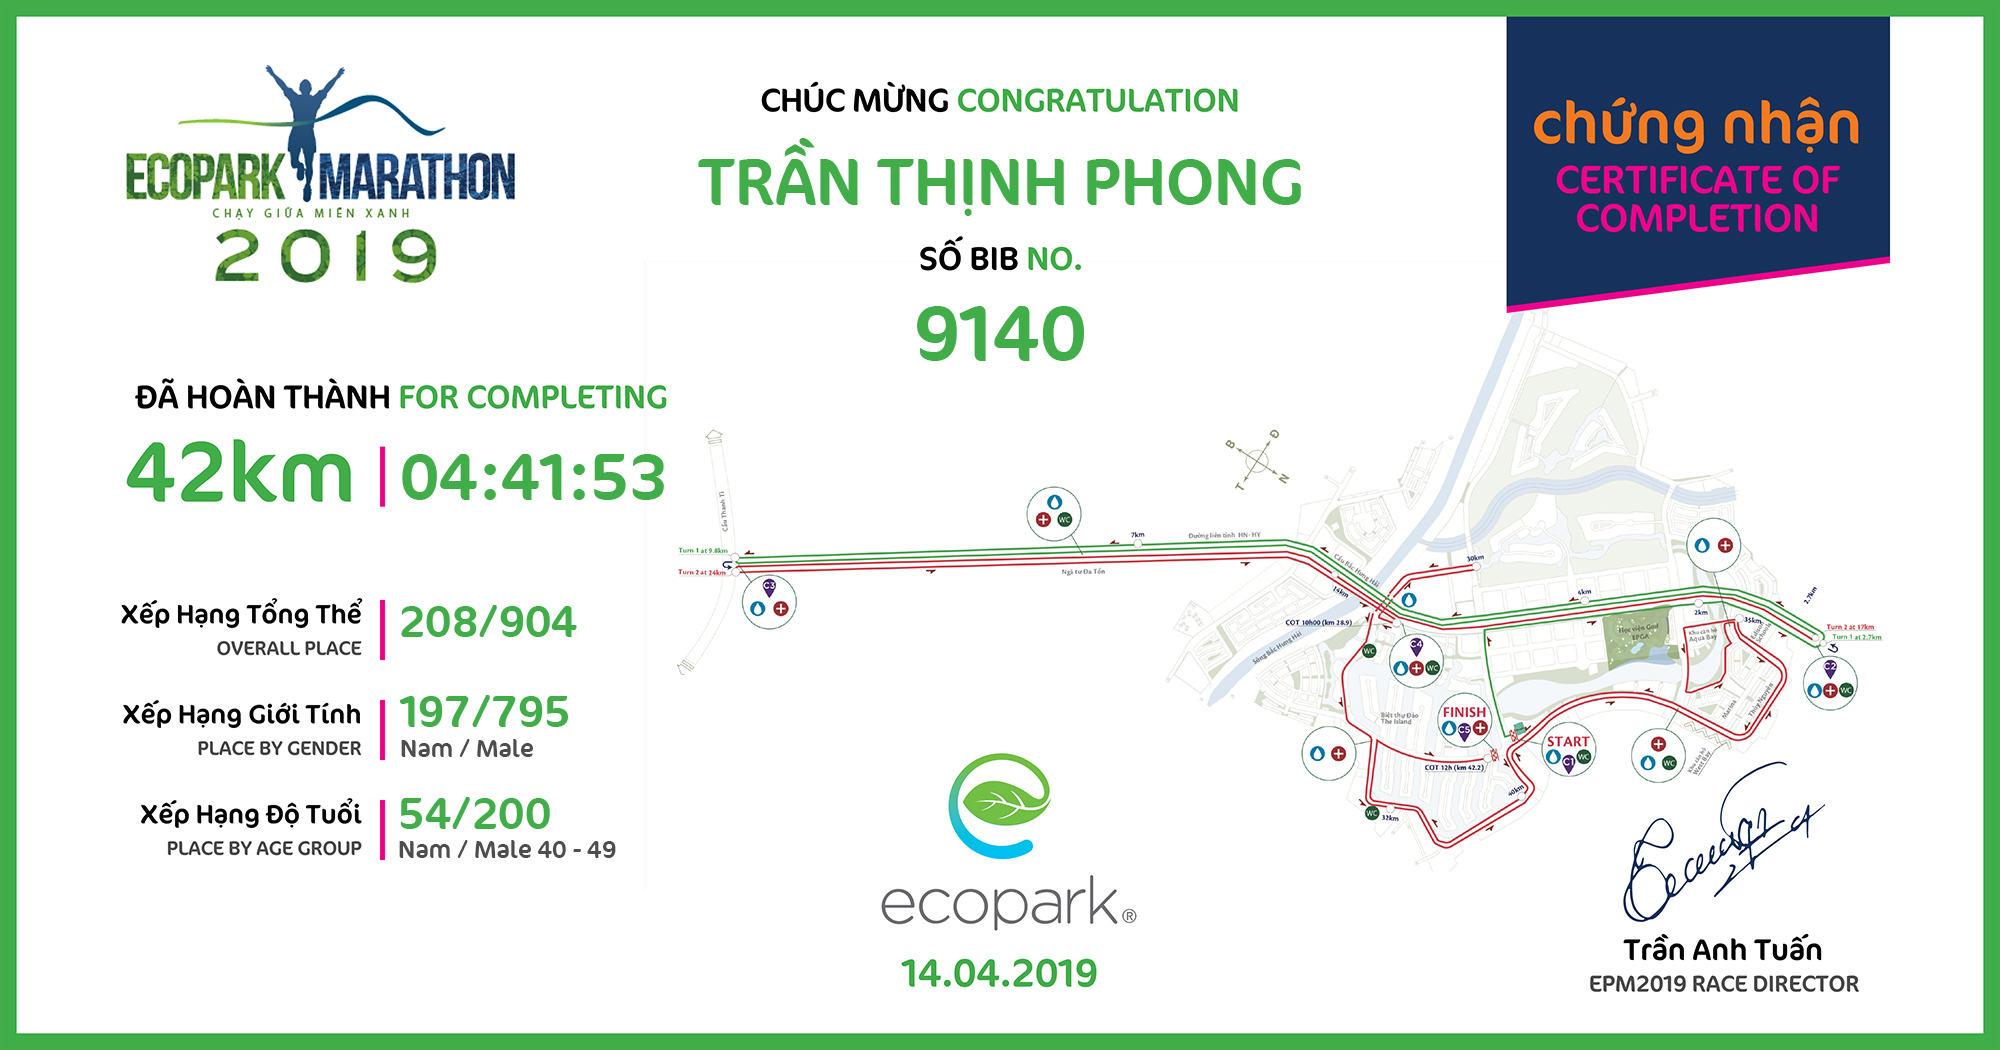 9140 - Trần Thịnh Phong